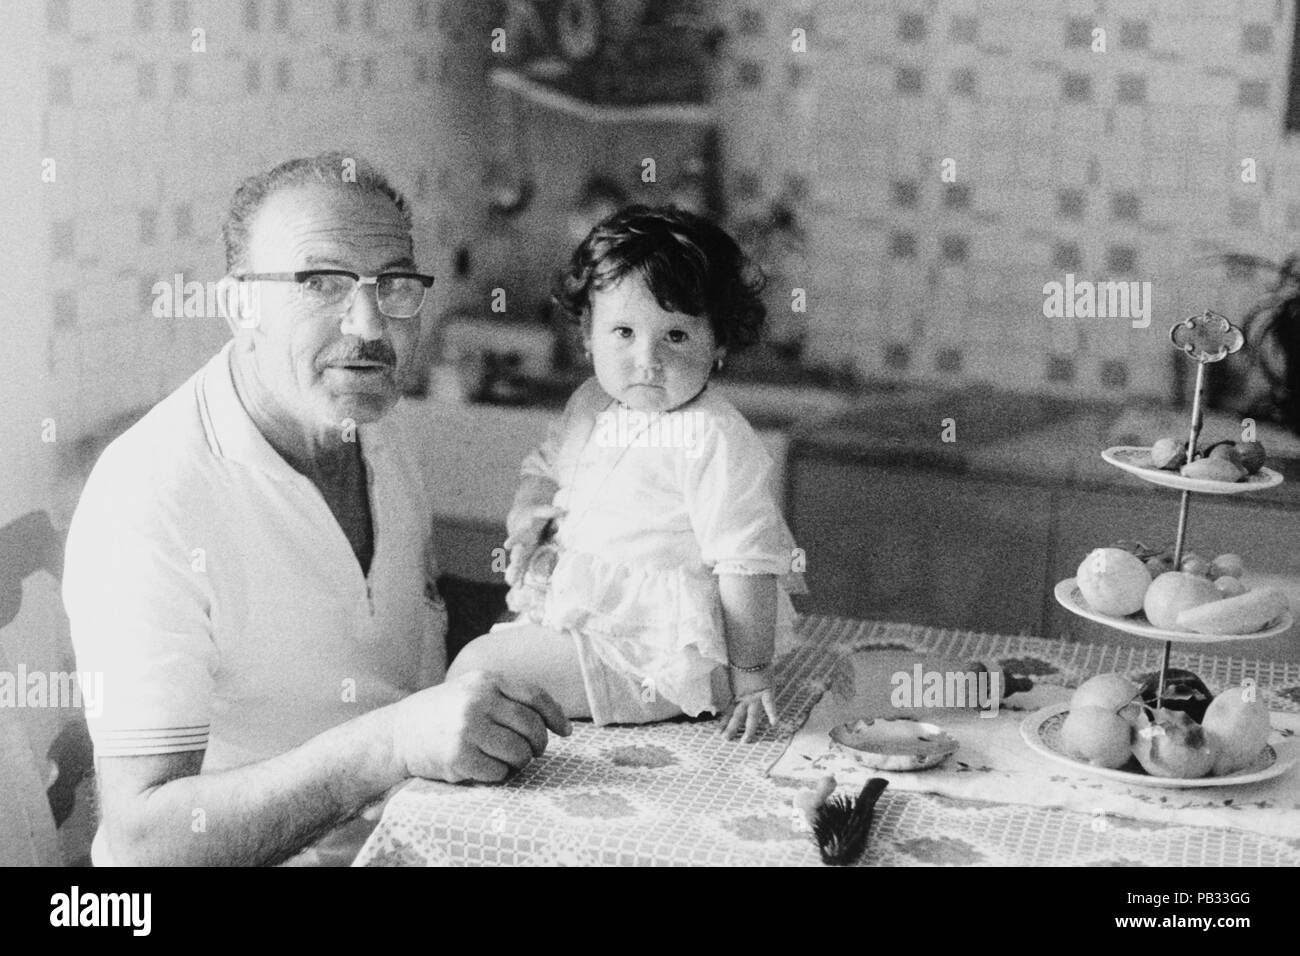 Grand-père et son neveu, l'Italie, 1970 Banque D'Images